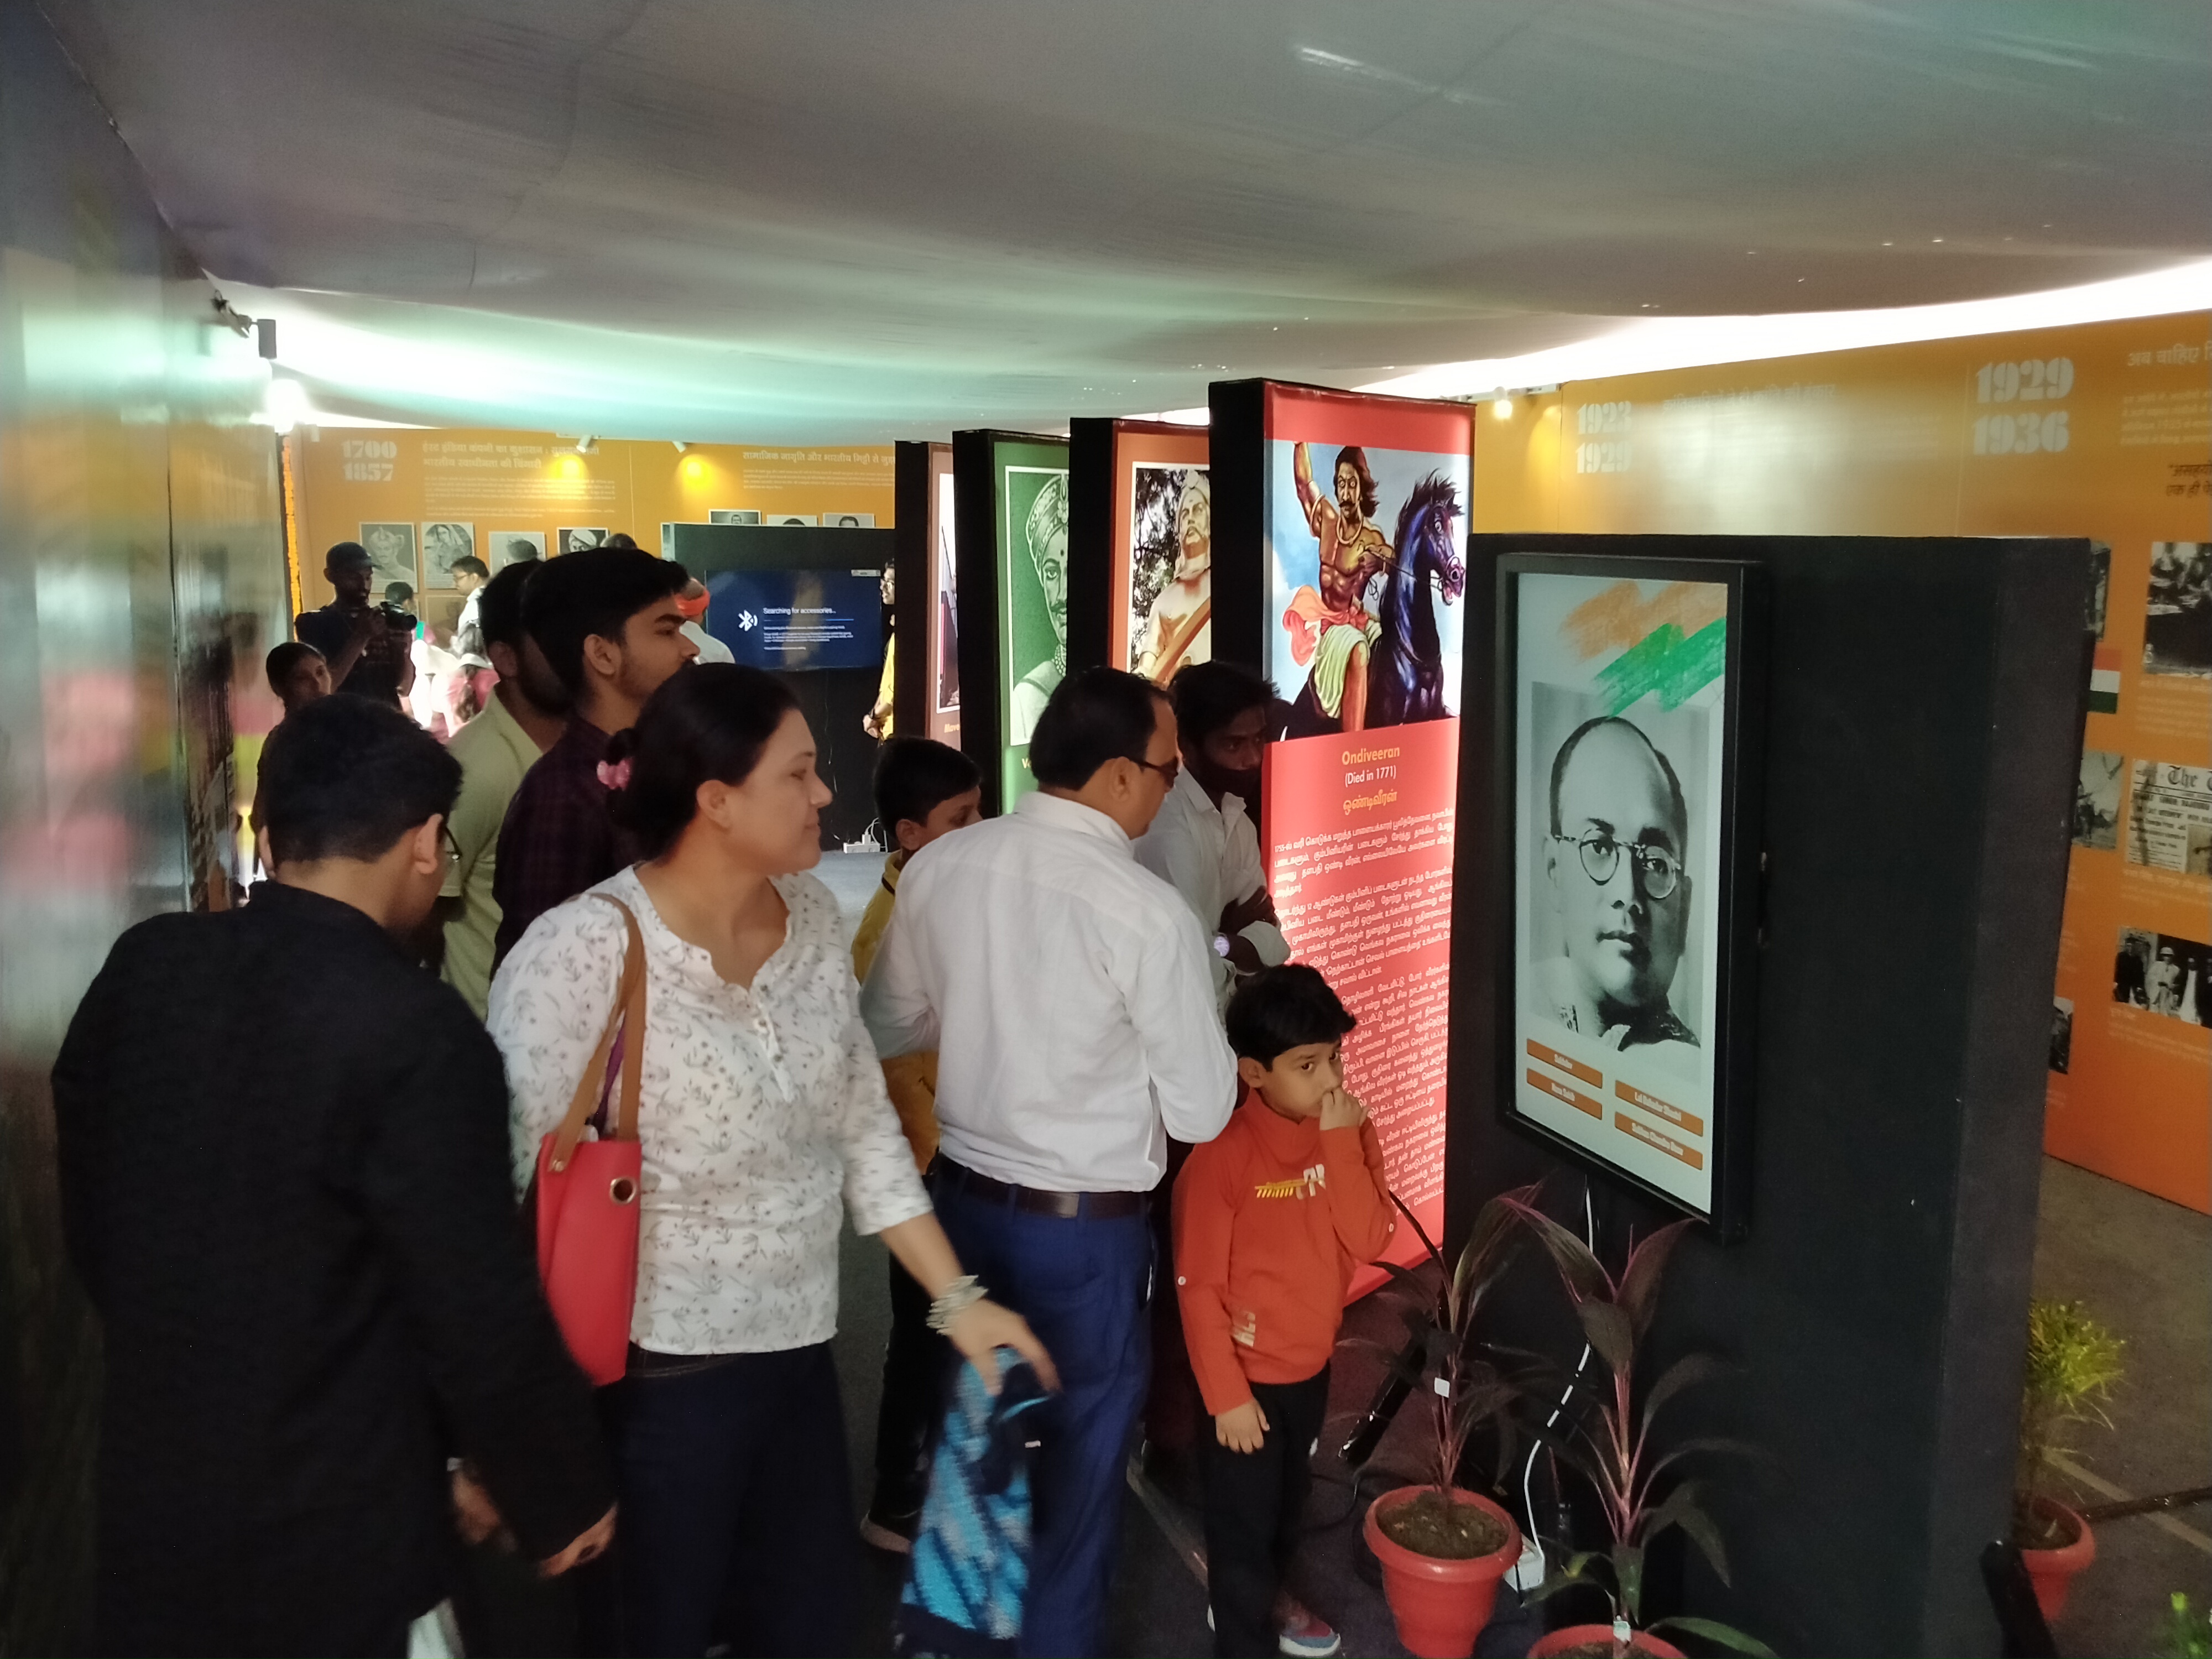 Kashi Tamil Sangamam : सूचना और प्रसारण मंत्रालय की प्रदर्शनी में प्रदर्शित हुआ राष्ट्र निर्माण में तमिलनाडु का योगदान